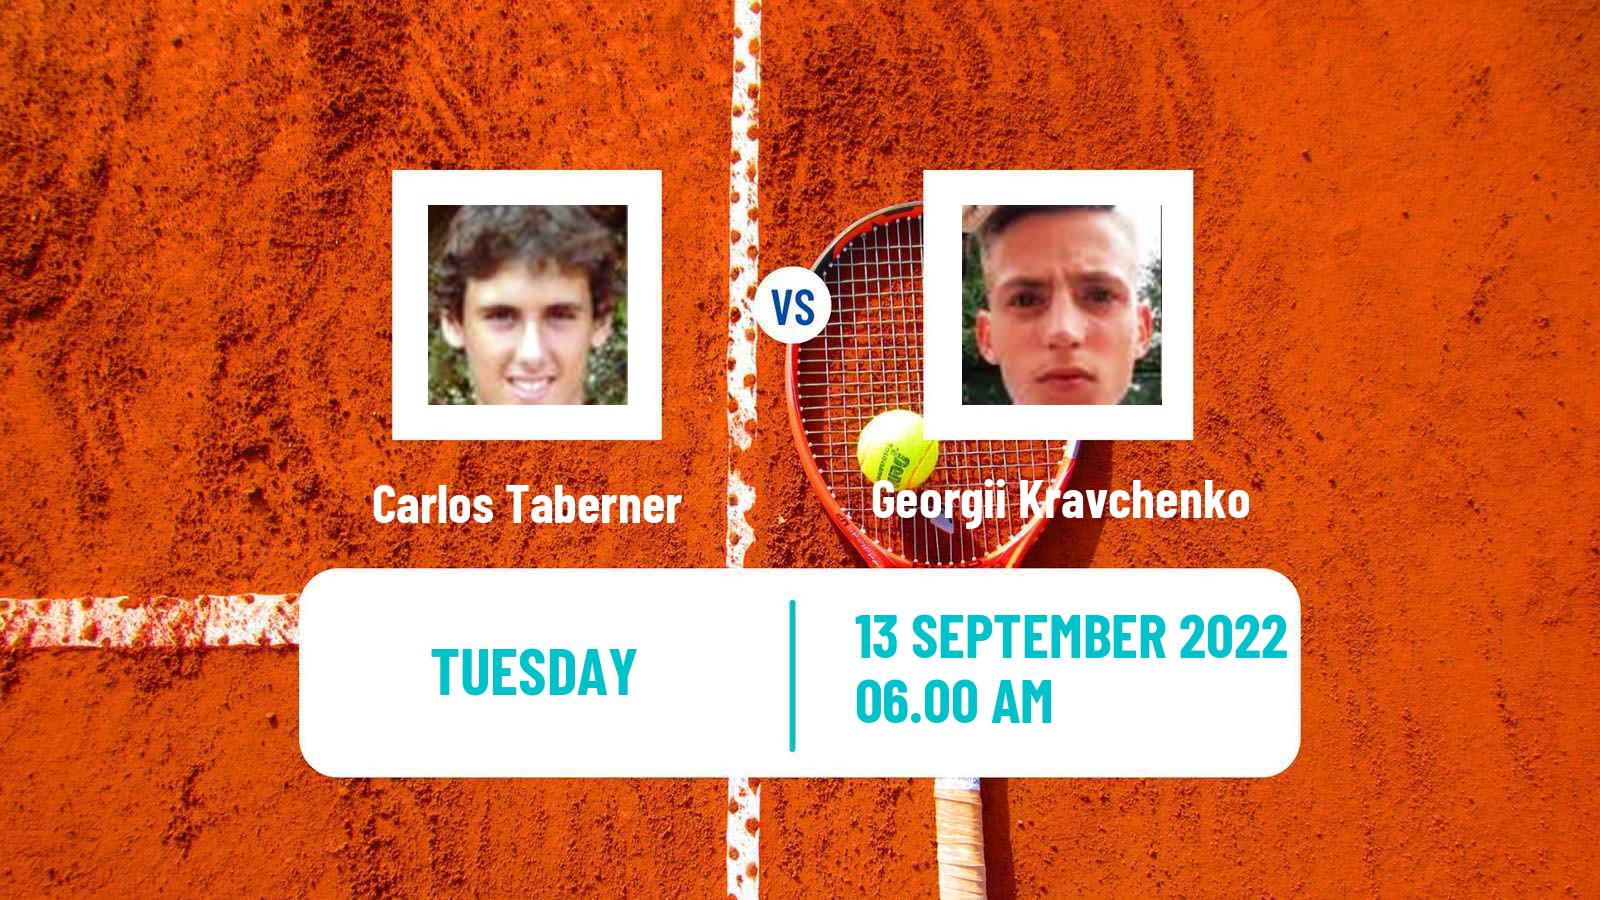 Tennis ATP Challenger Carlos Taberner - Georgii Kravchenko